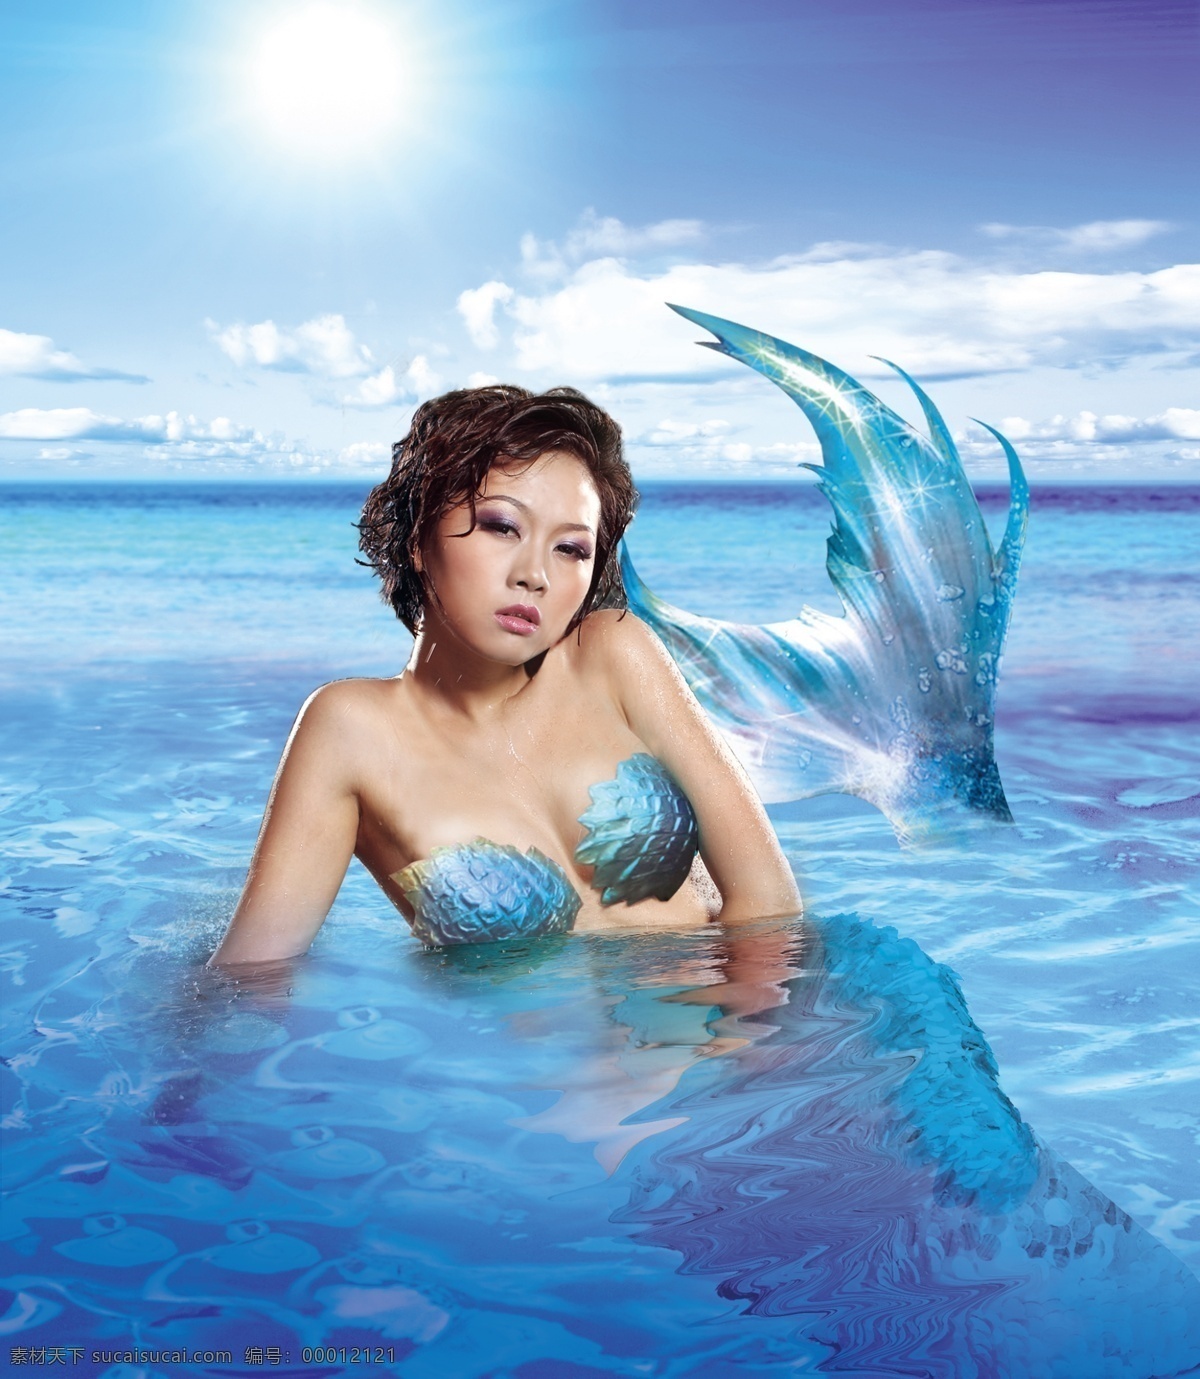 美人女子 波纹 广告 广告设计模板 海 海洋 流动的水 美人 美人鱼 传说 童话 女子 漂亮女人 源文件 psd源文件